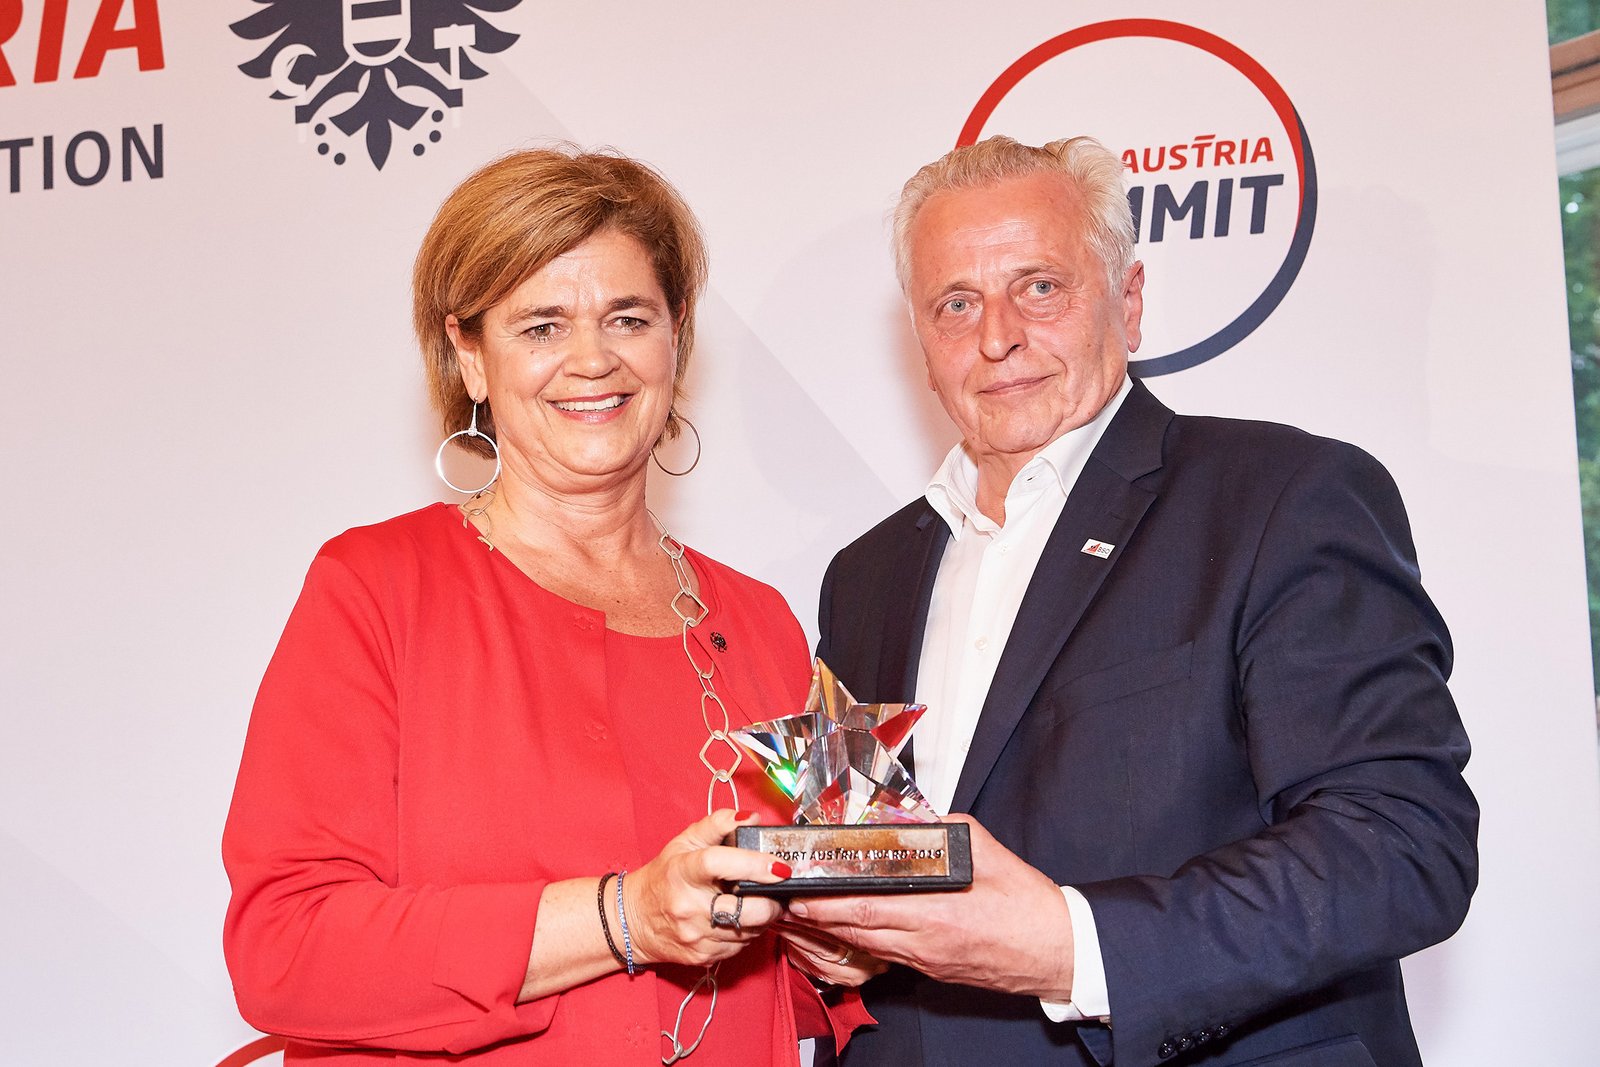 BSO-Präsident Rudolf Hundstorfer verlieh den Sport Austria Award an die Österreichischen Lotterien, vertreten durch die Vorstandsvorsitzende, Mag. Bettina Glatz-Kremsner. Foto: BSO/Leo Hagen